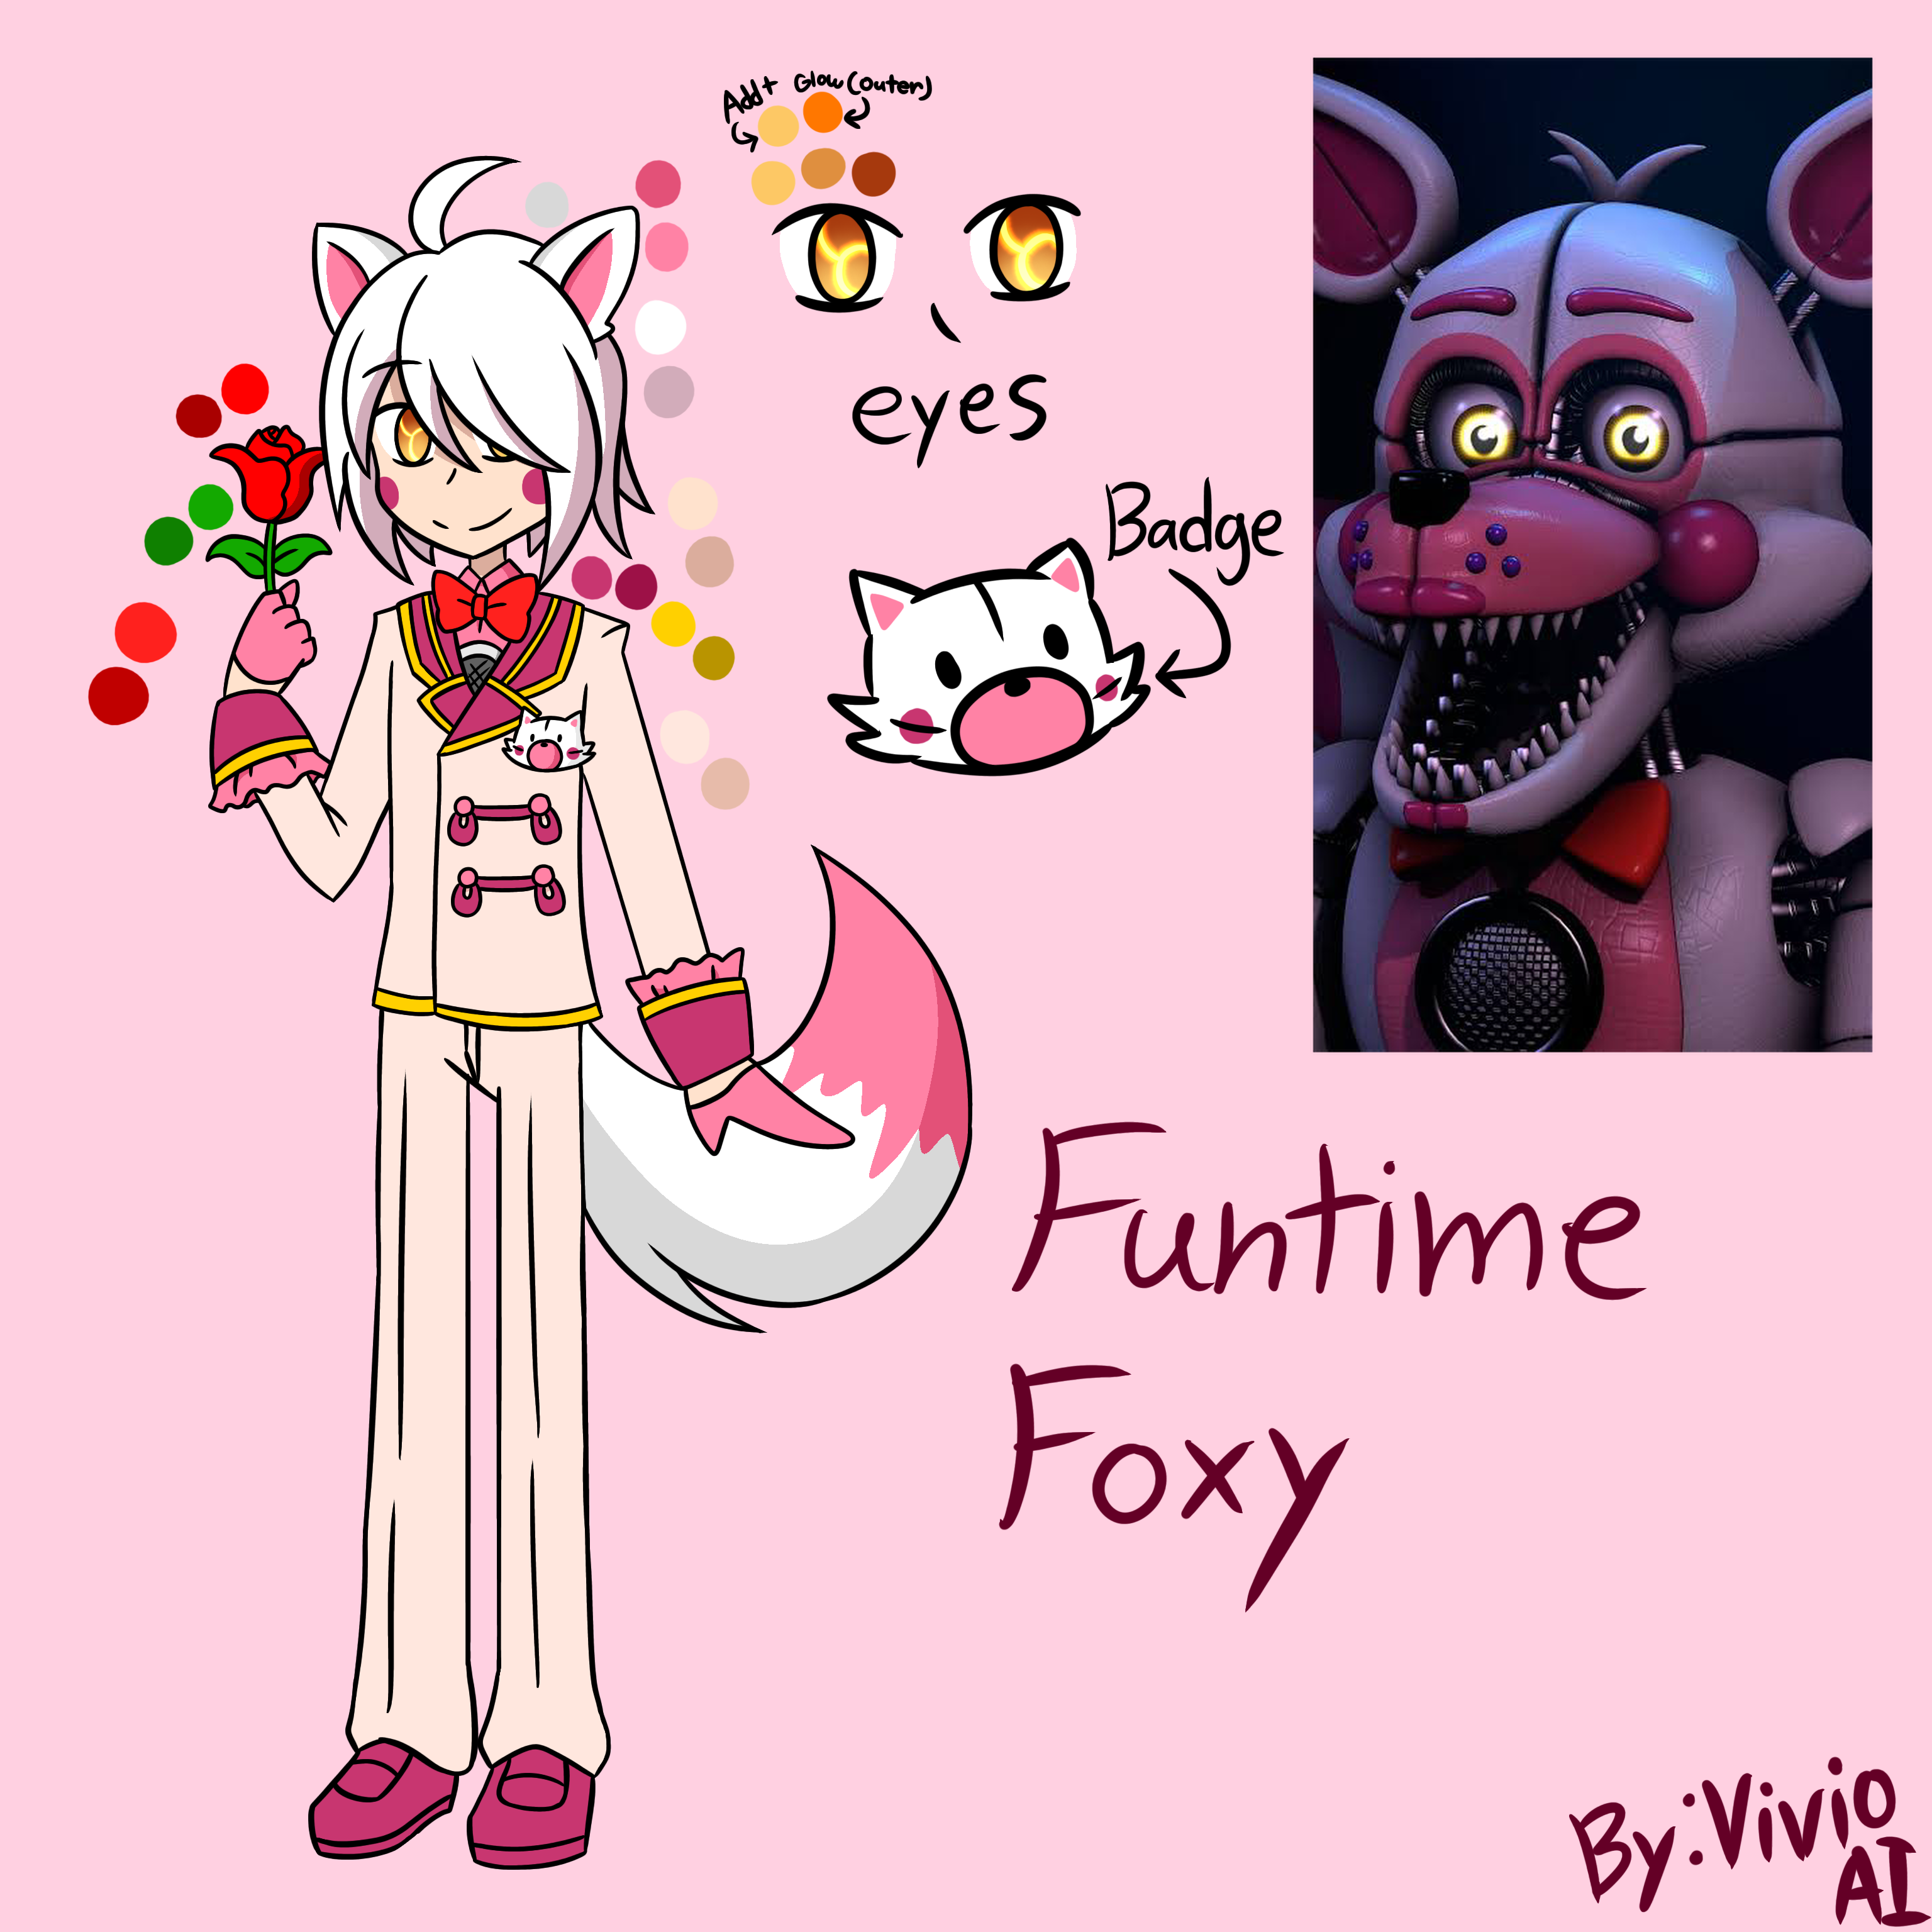 𝘍𝘶𝘯𝘵𝘪𝘮𝘦 𝘍𝘰𝘹𝘺 𝘟 𝘓𝘰𝘭𝘣𝘪𝘵 - ~Finale~ - Funtime Foxy